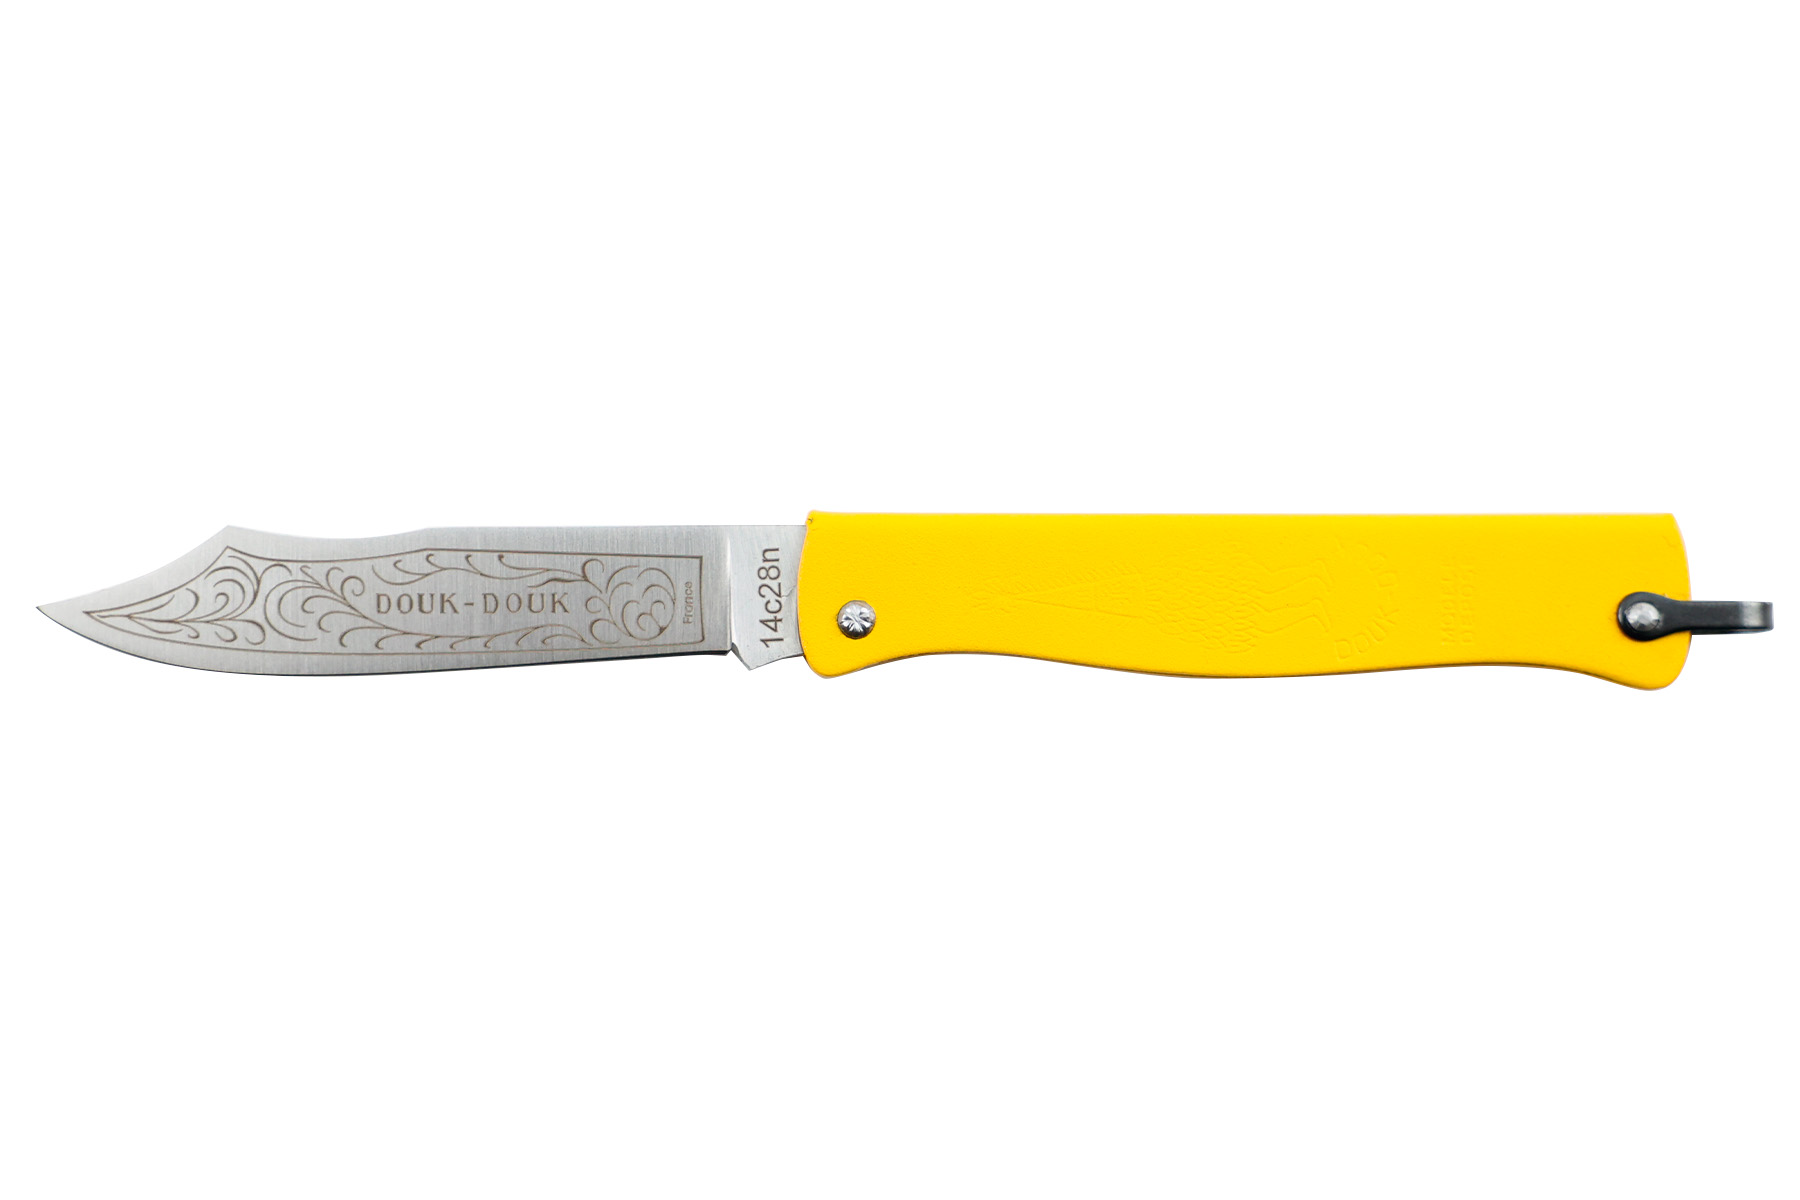 Couteau pliant Douk-Douk par Cognet couleur jaune - Nouvelle version